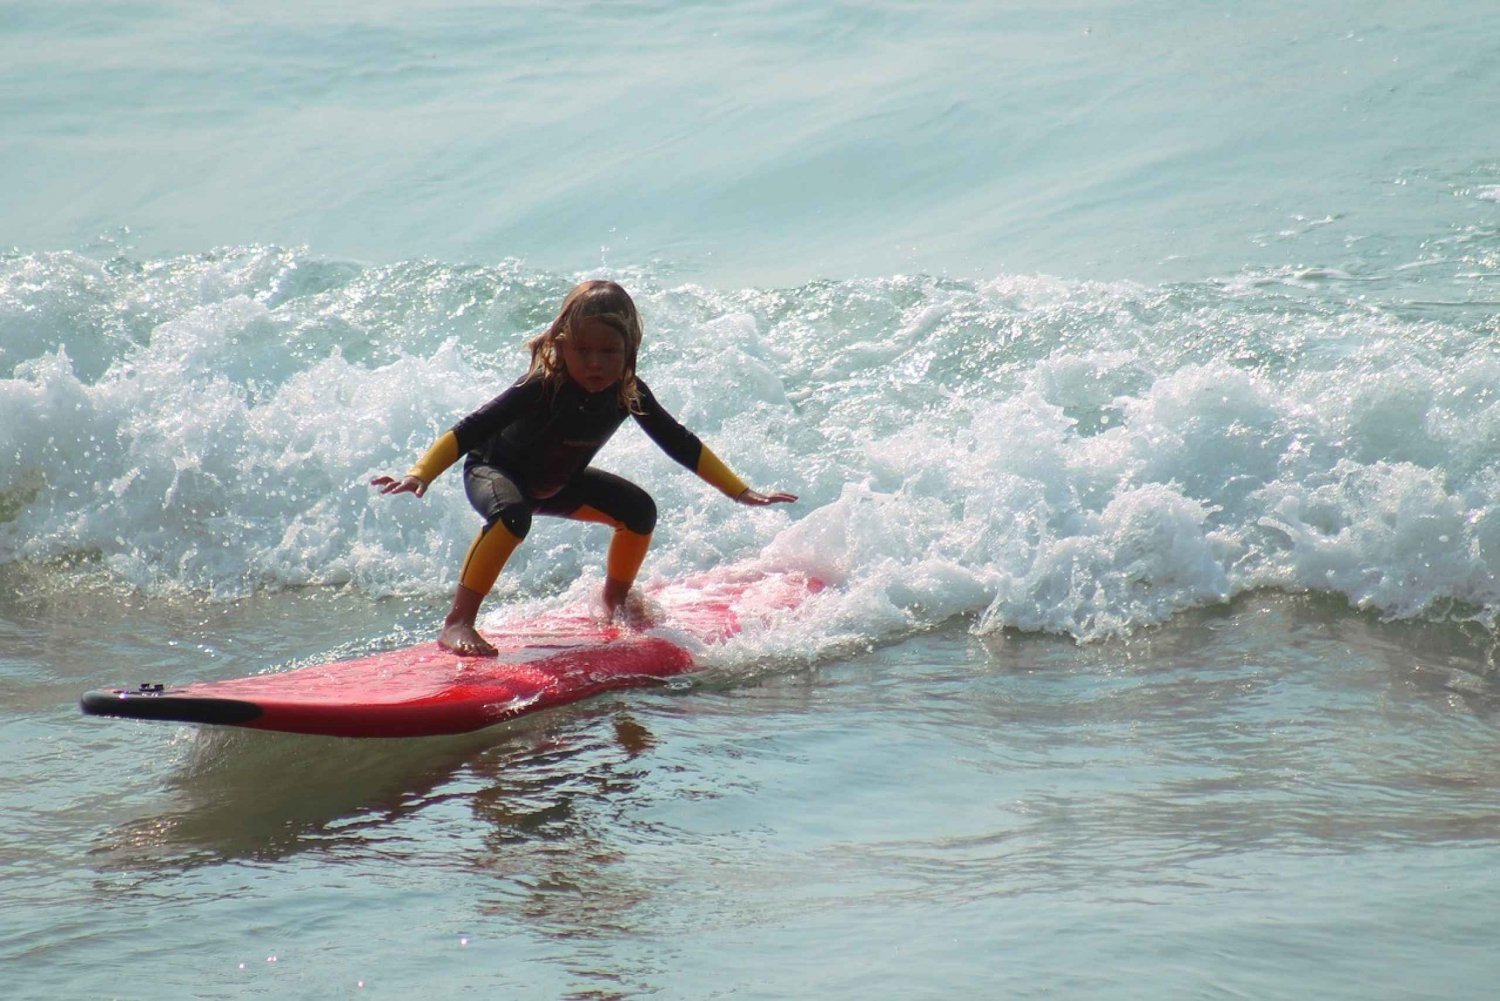 Tel Aviv: lezioni professionali di surf al Beach Club TLV